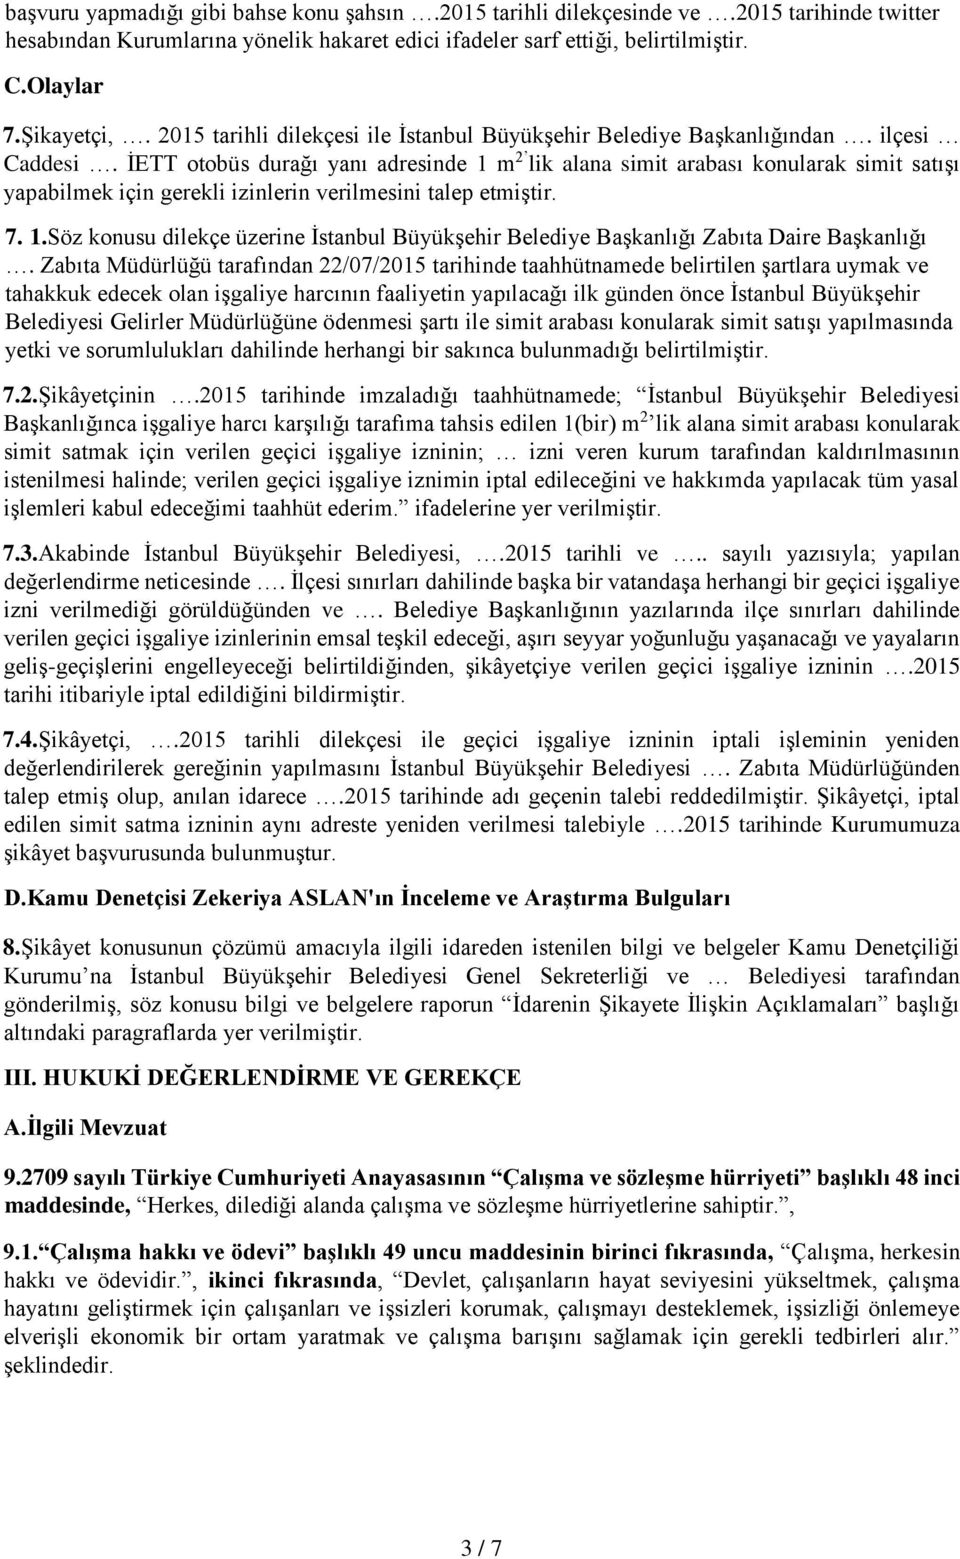 İETT otobüs durağı yanı adresinde 1 m 2 lik alana simit arabası konularak simit satışı yapabilmek için gerekli izinlerin verilmesini talep etmiştir. 7. 1.Söz konusu dilekçe üzerine İstanbul Büyükşehir Belediye Başkanlığı Zabıta Daire Başkanlığı.